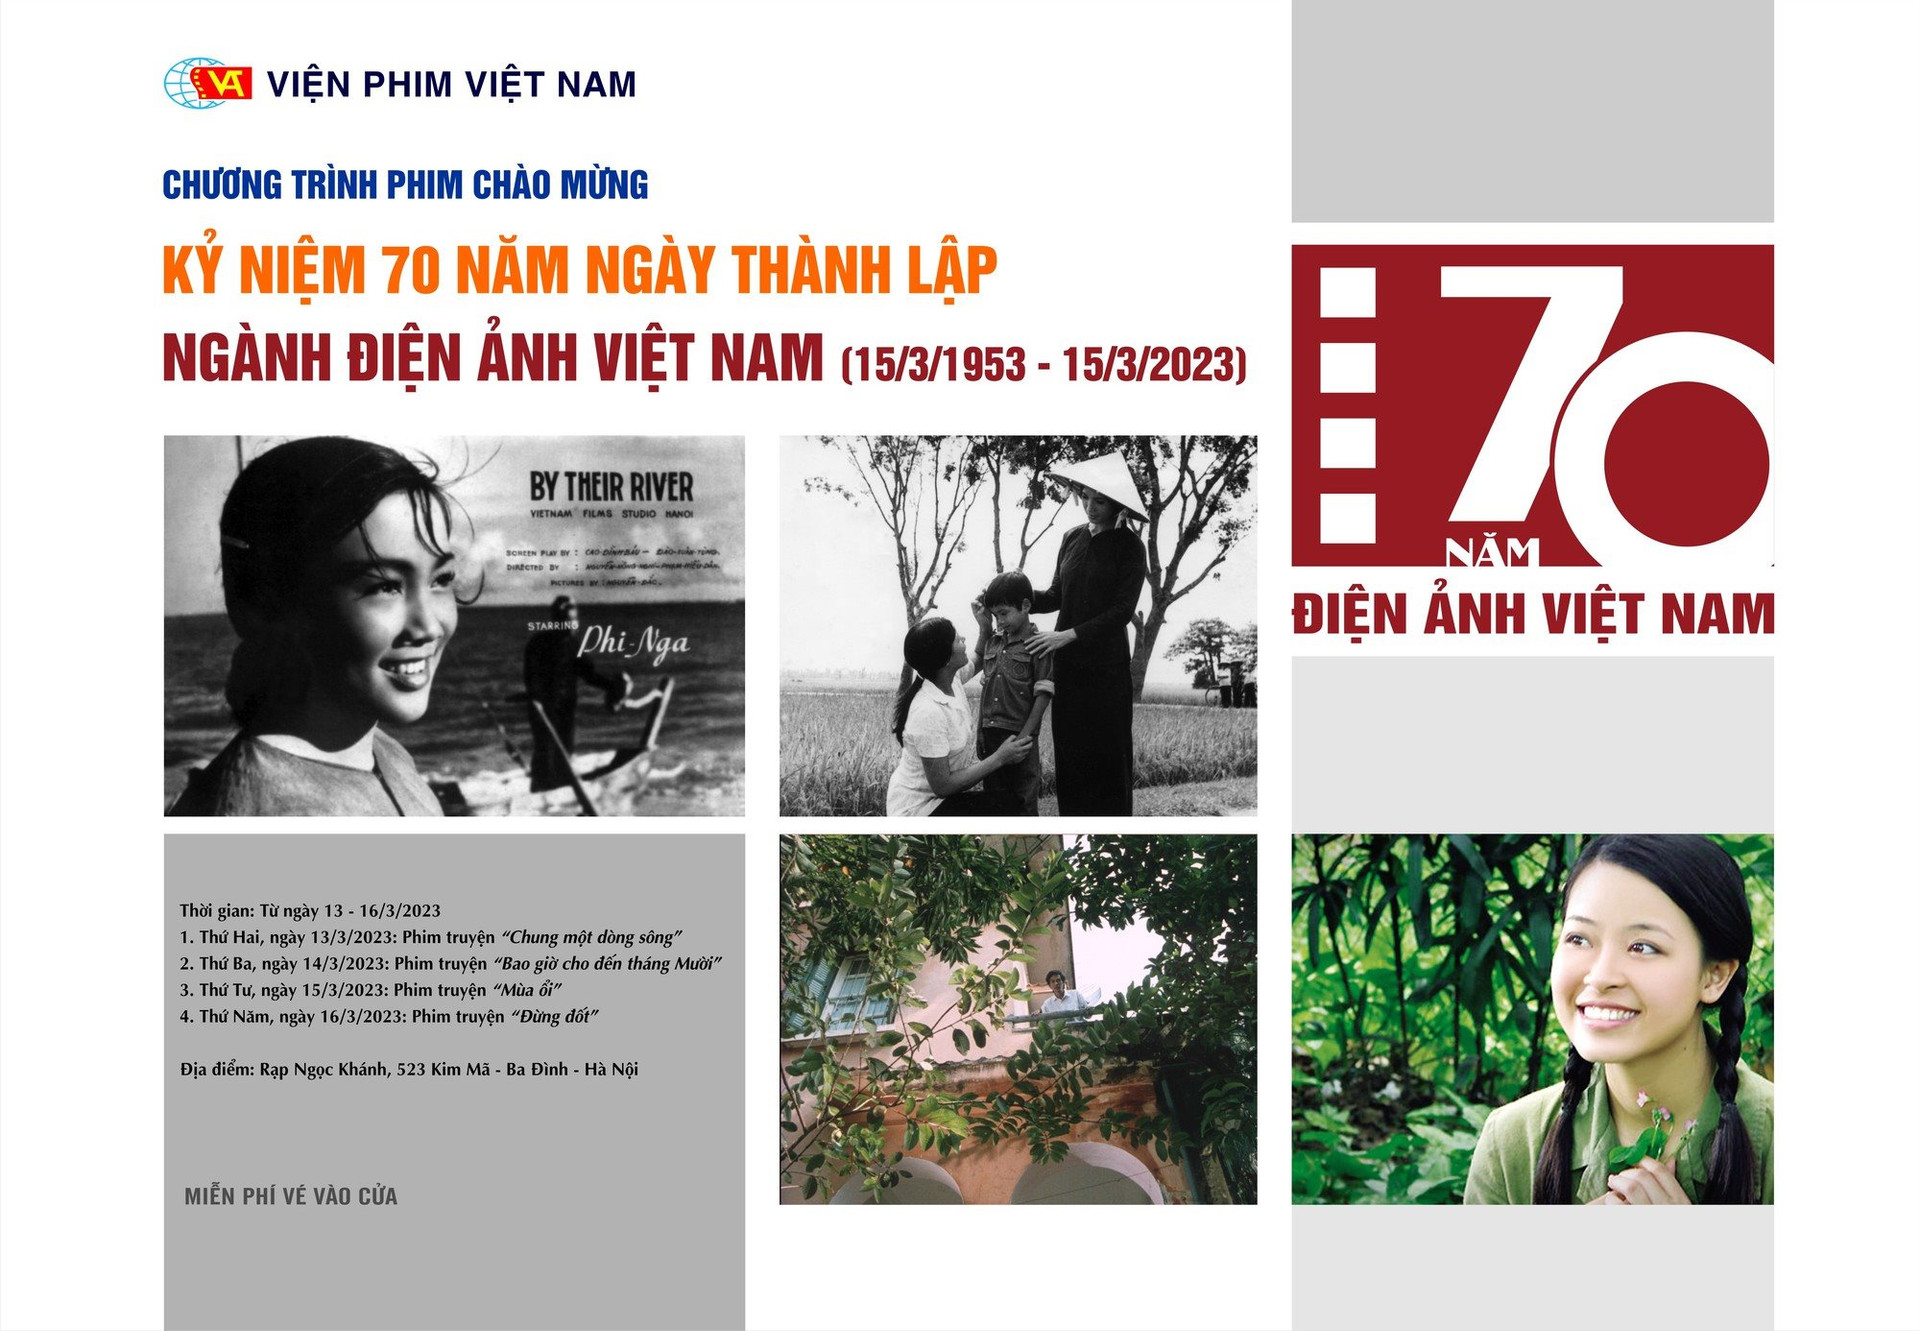 Chiếu 7 bộ phim chào mừng 70 năm ngày điện ảnh cách mạng Việt Nam